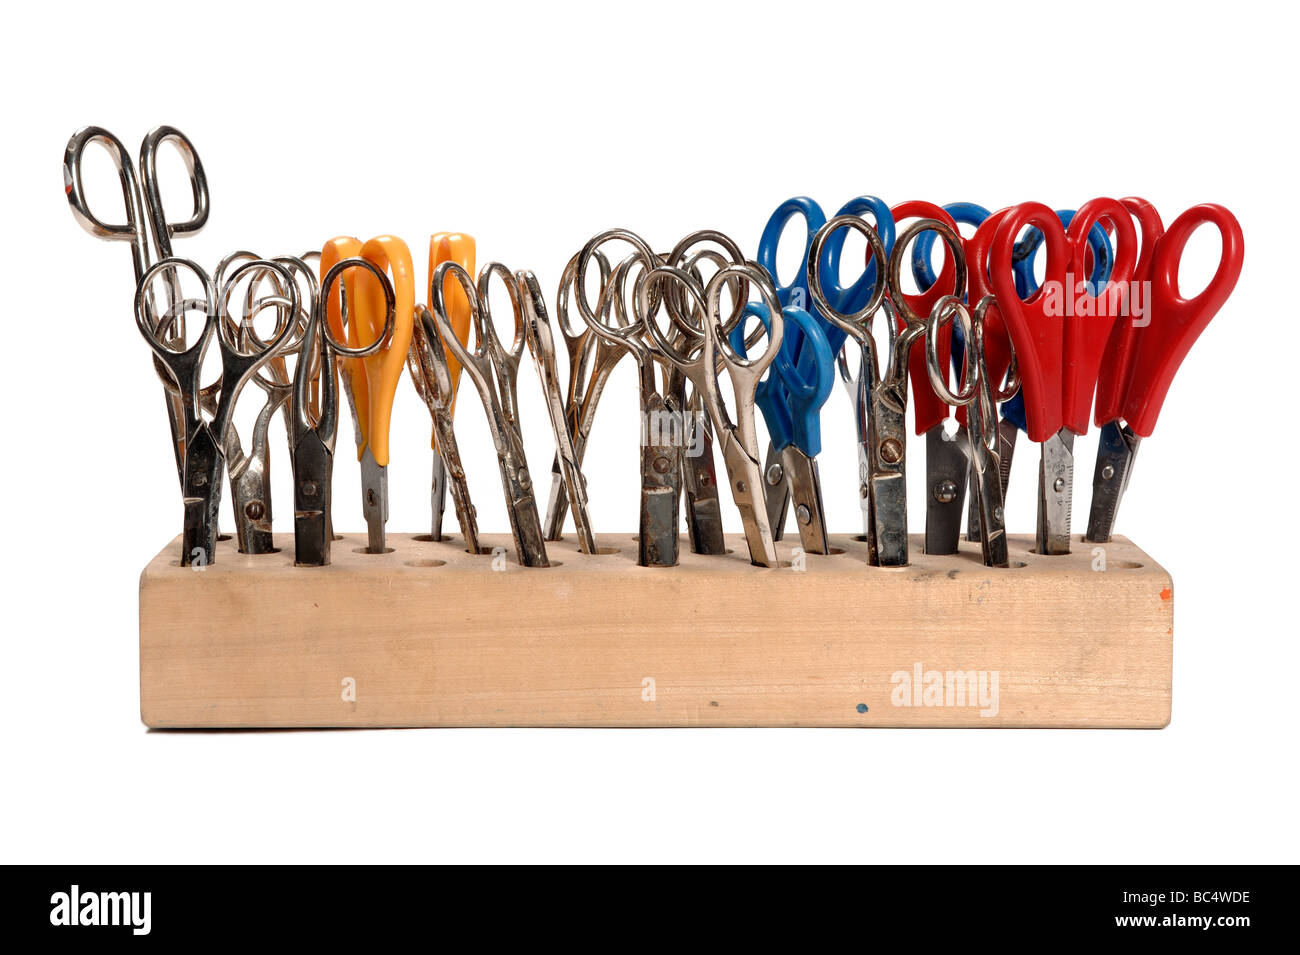 School scissors Stock Photo